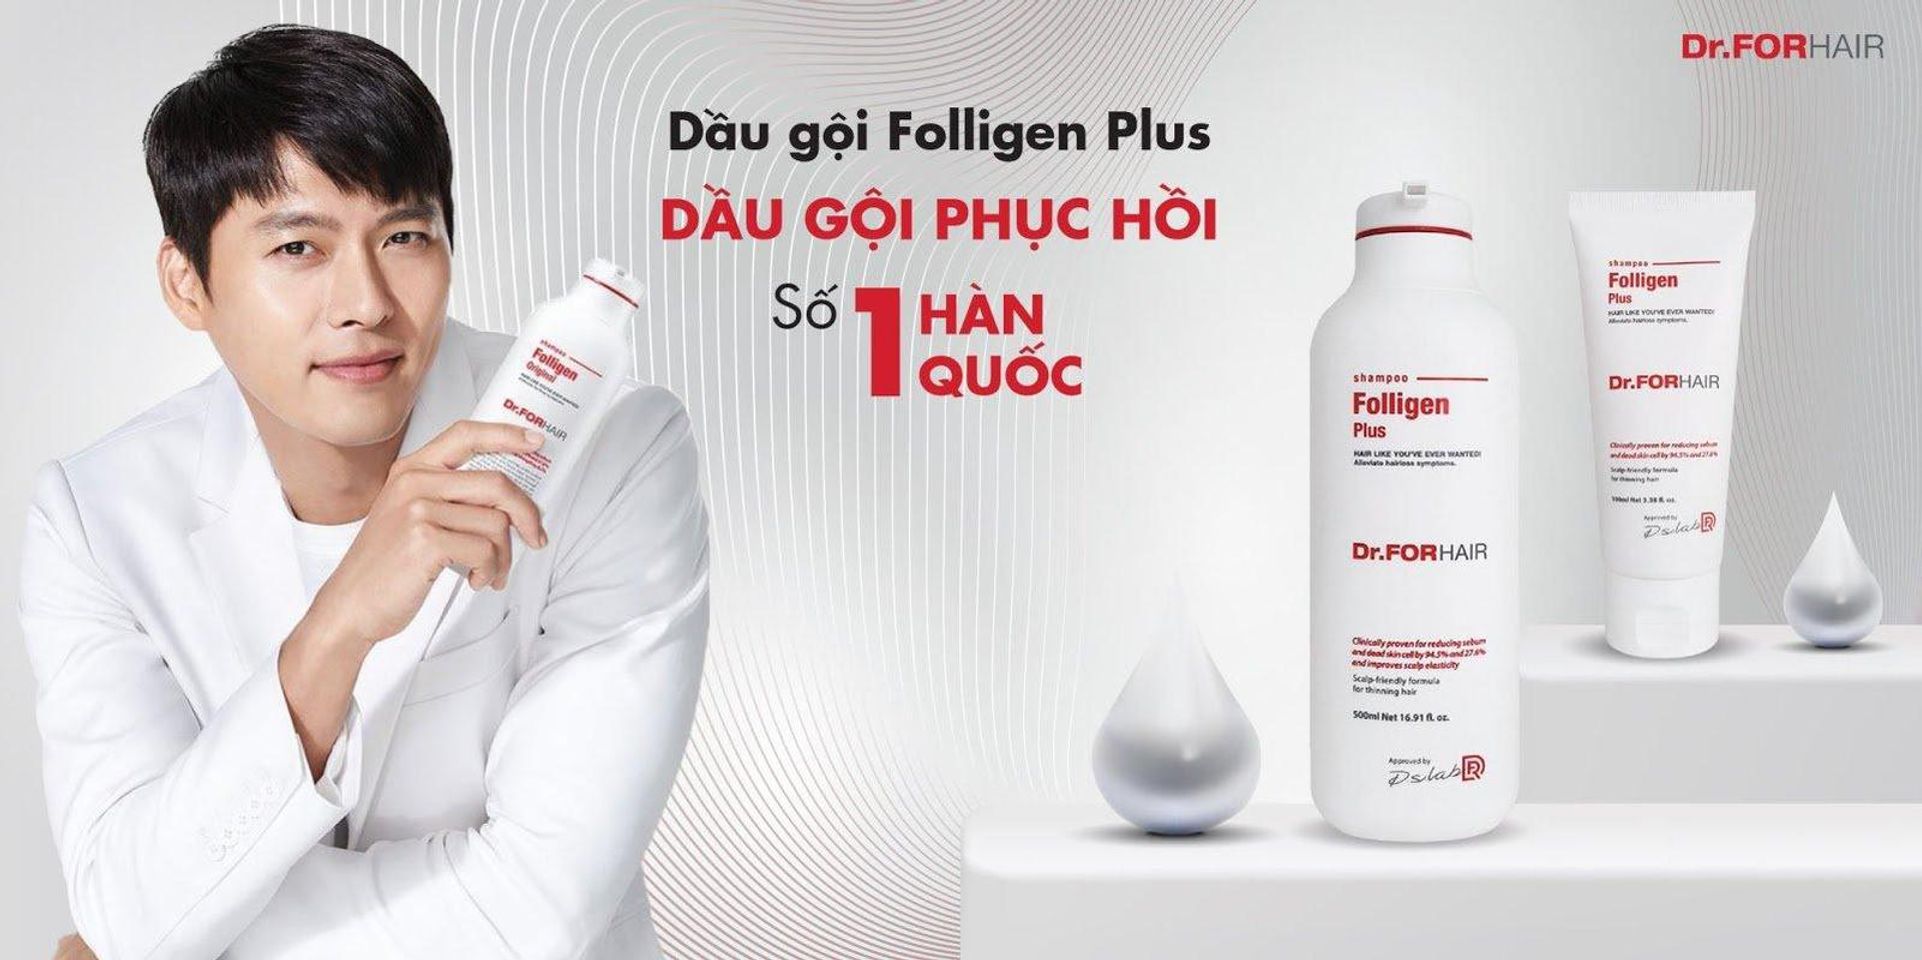 Dầu Gội Ngăn Ngừa Rụng Tóc Dr.FORHAIR/Dr For Hair Folligen Plus Shampoo hiện đã có mặt tại Chiaki.vn với 2 dung tích cho bạn lựa chọn: 100ml và 500ml.